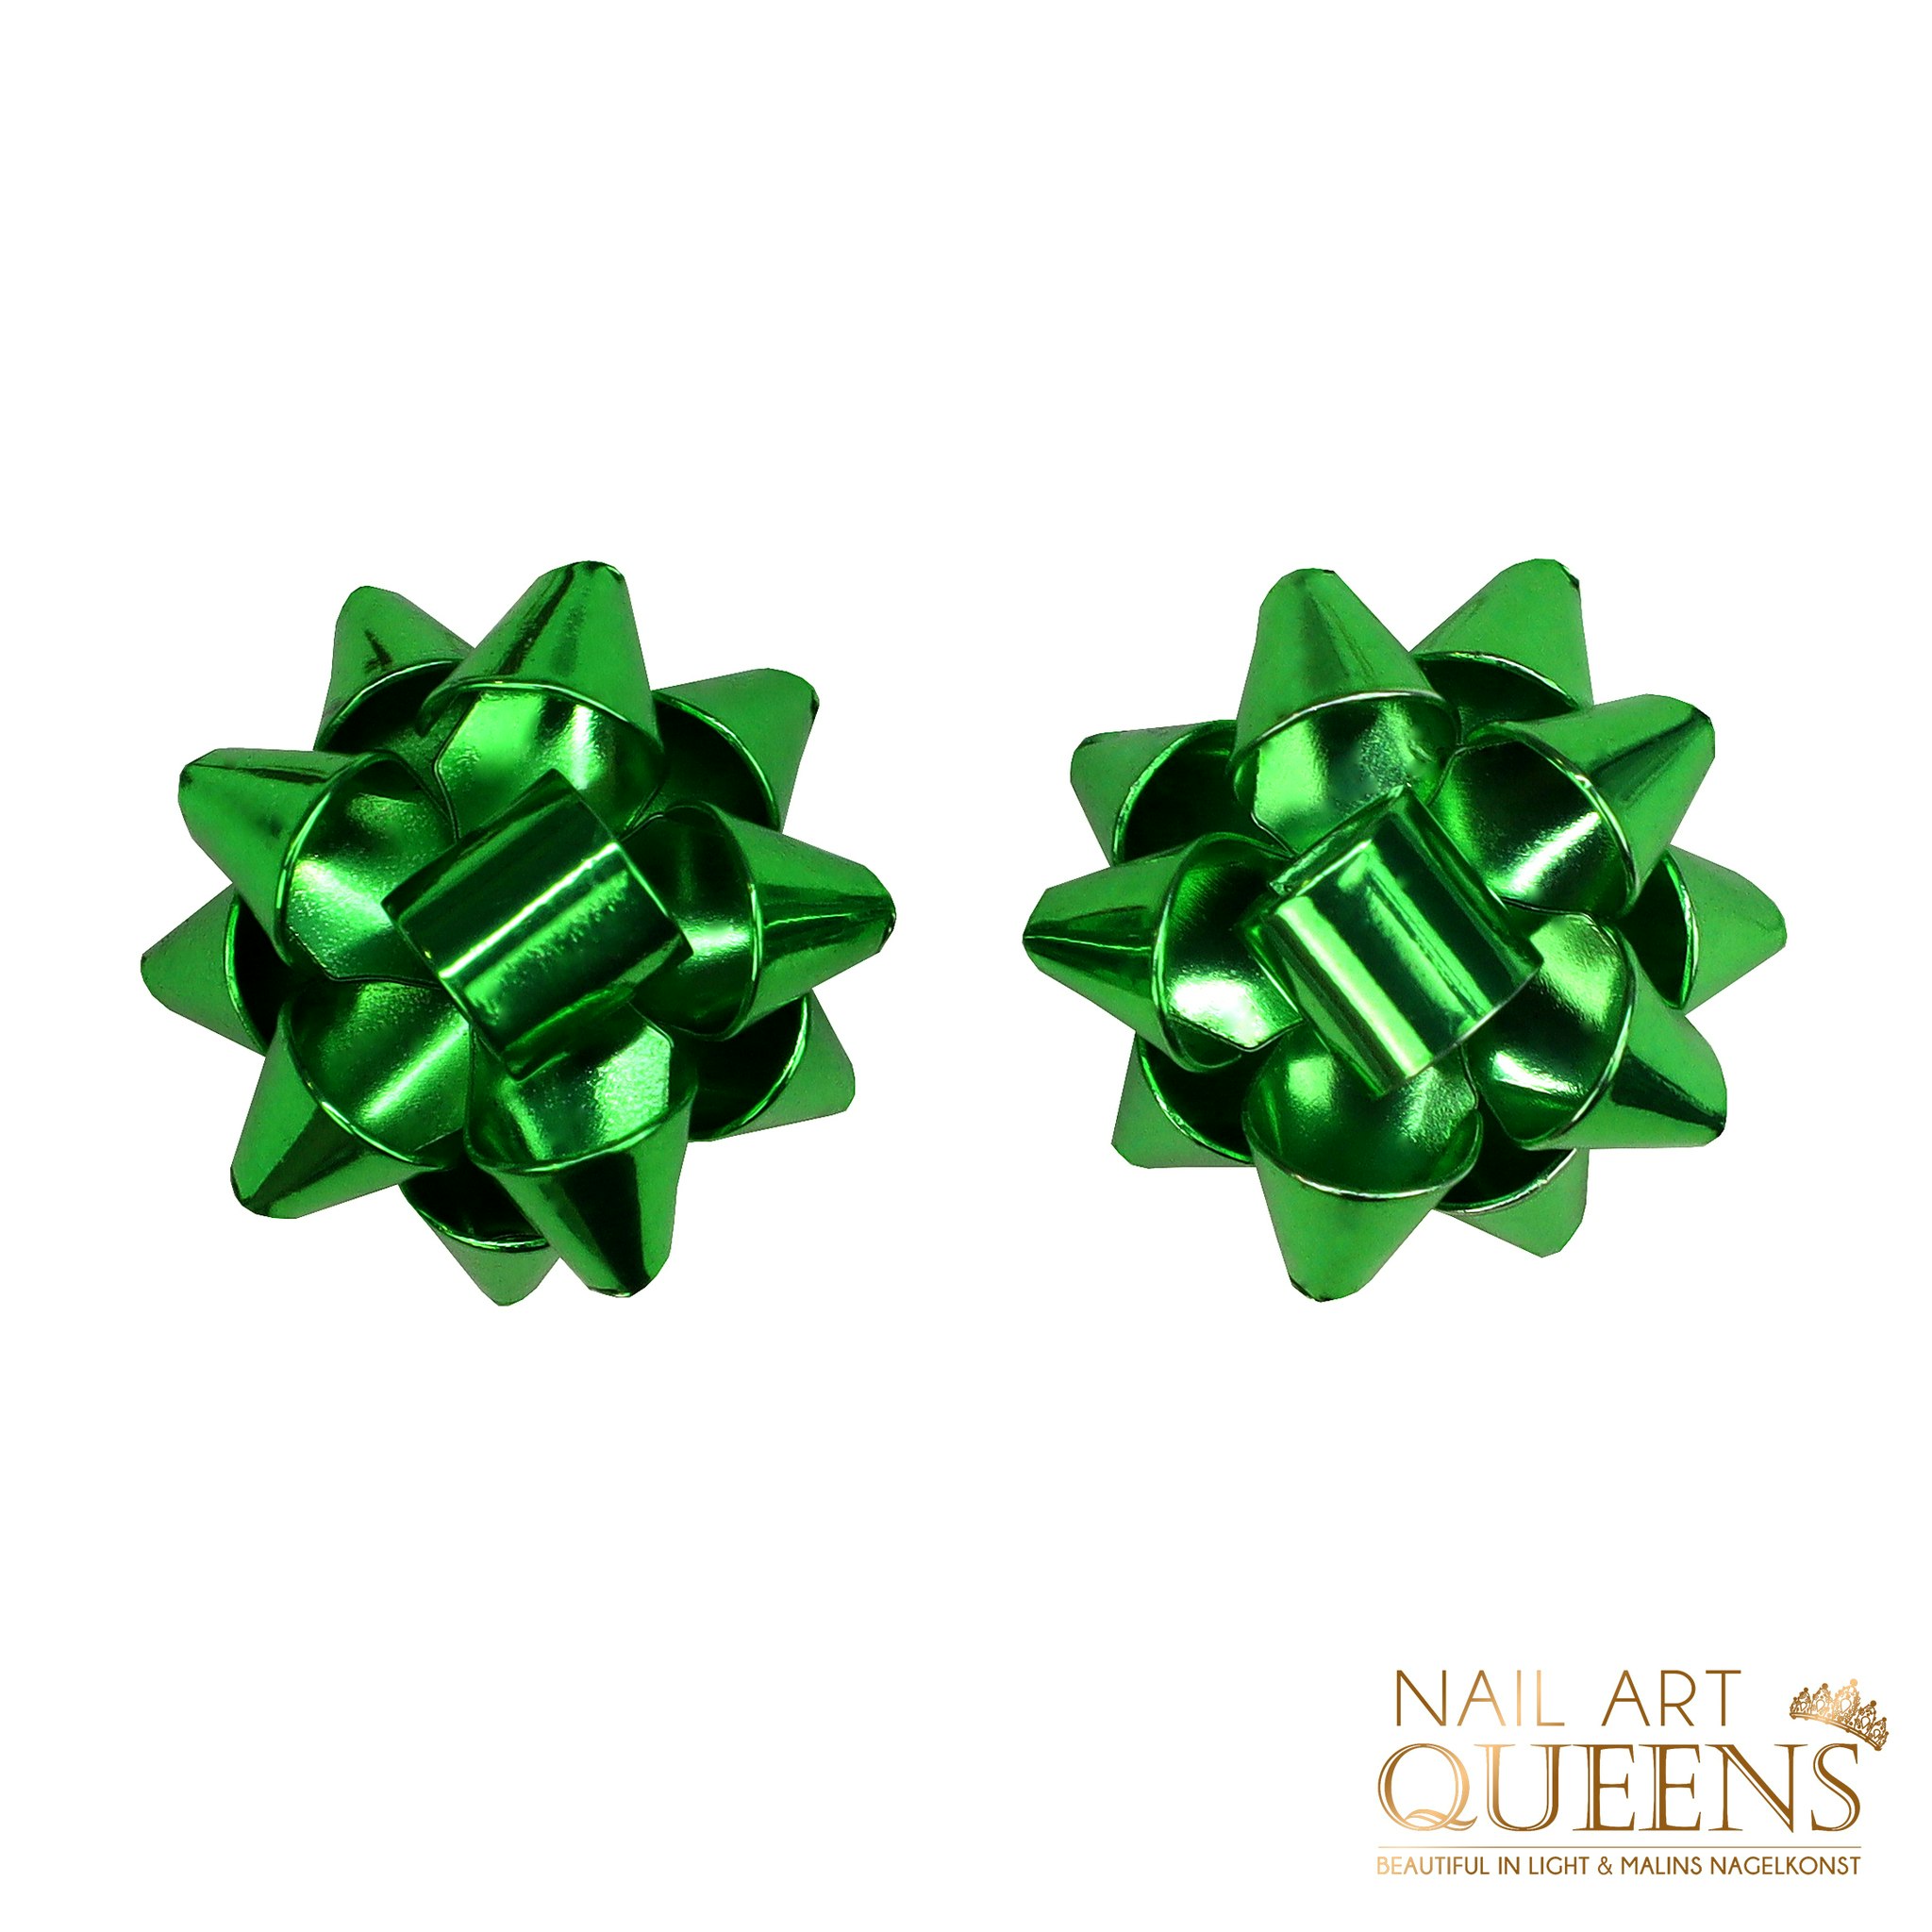 Earrings green knot